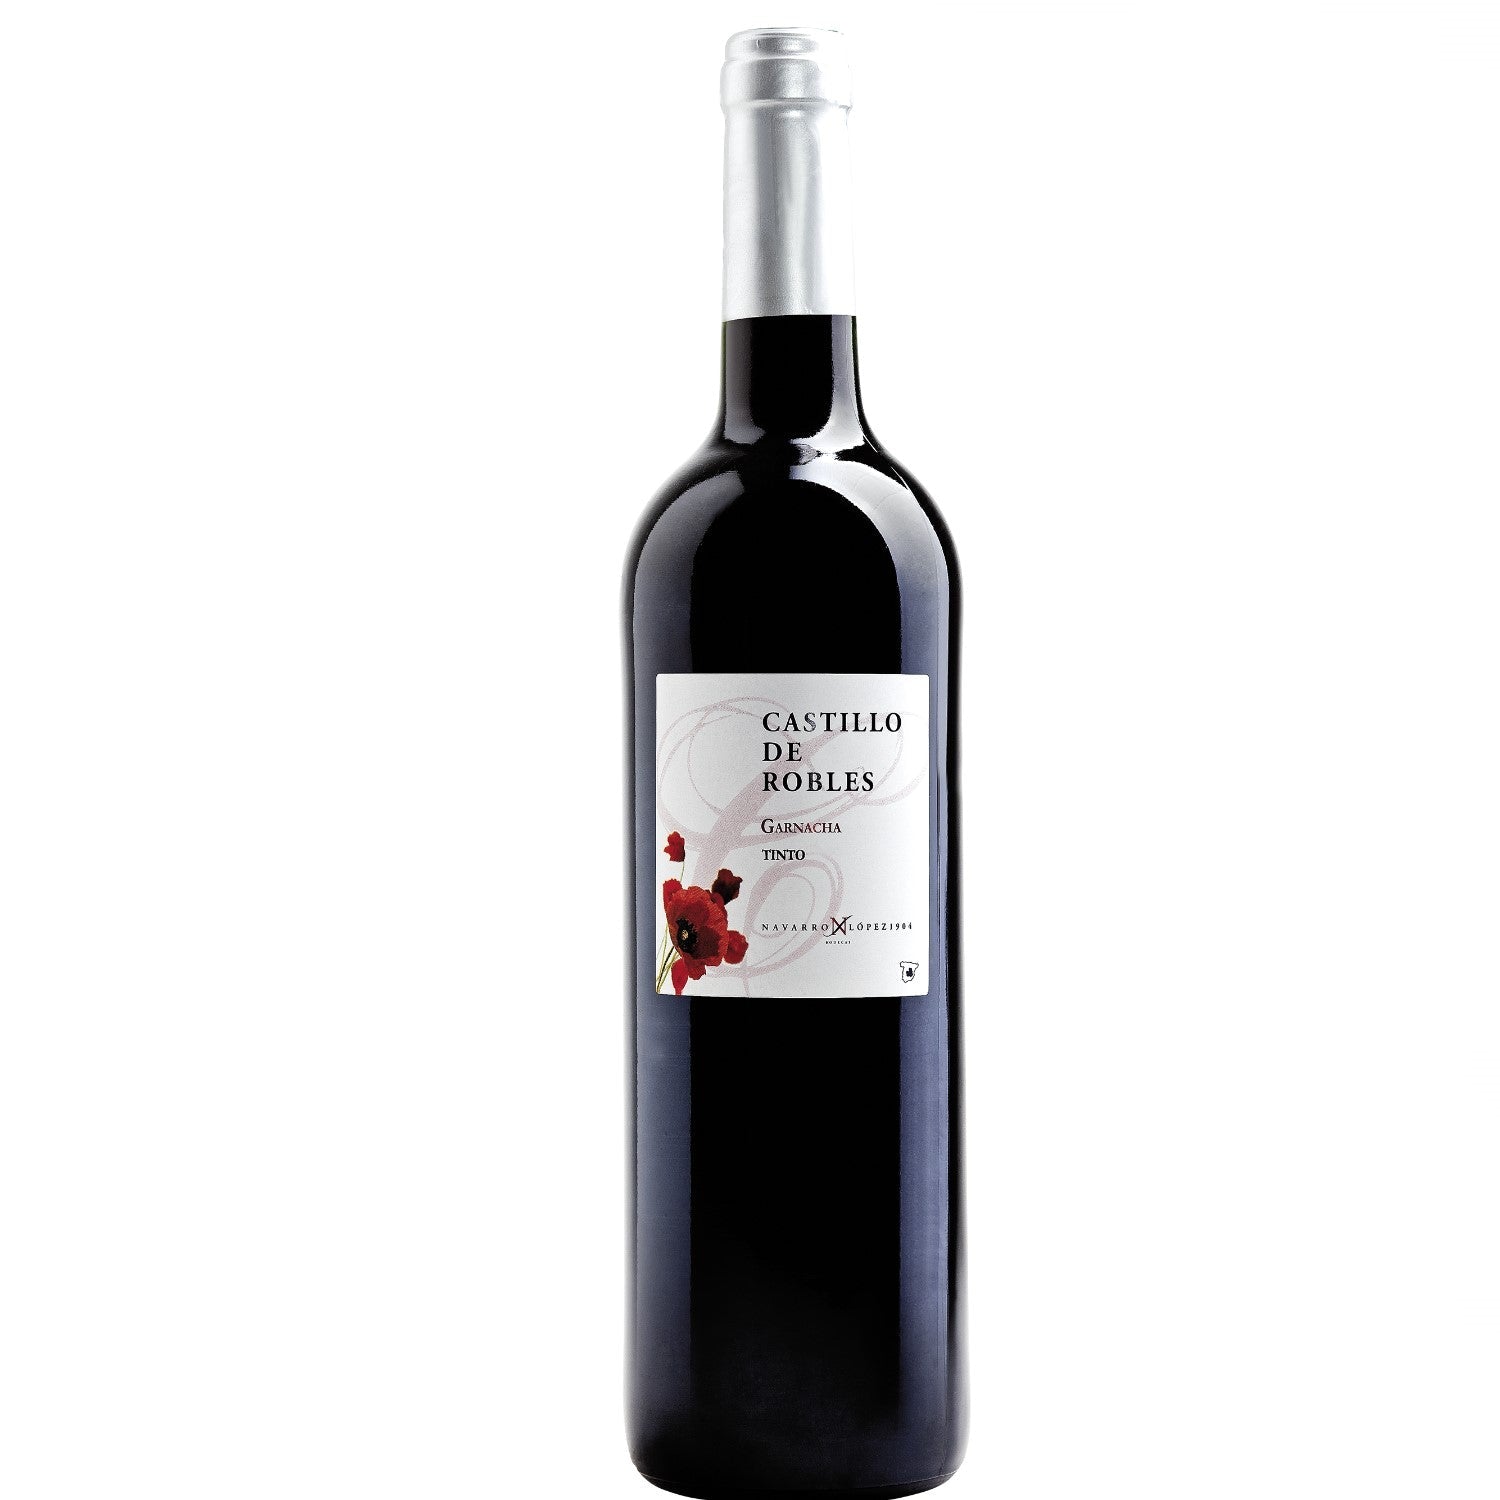 Castillo de Robles Garnacha Tinto VDT Rotwein Wein halbtrocken Spanien (3 x 0.75l) - Versanel -